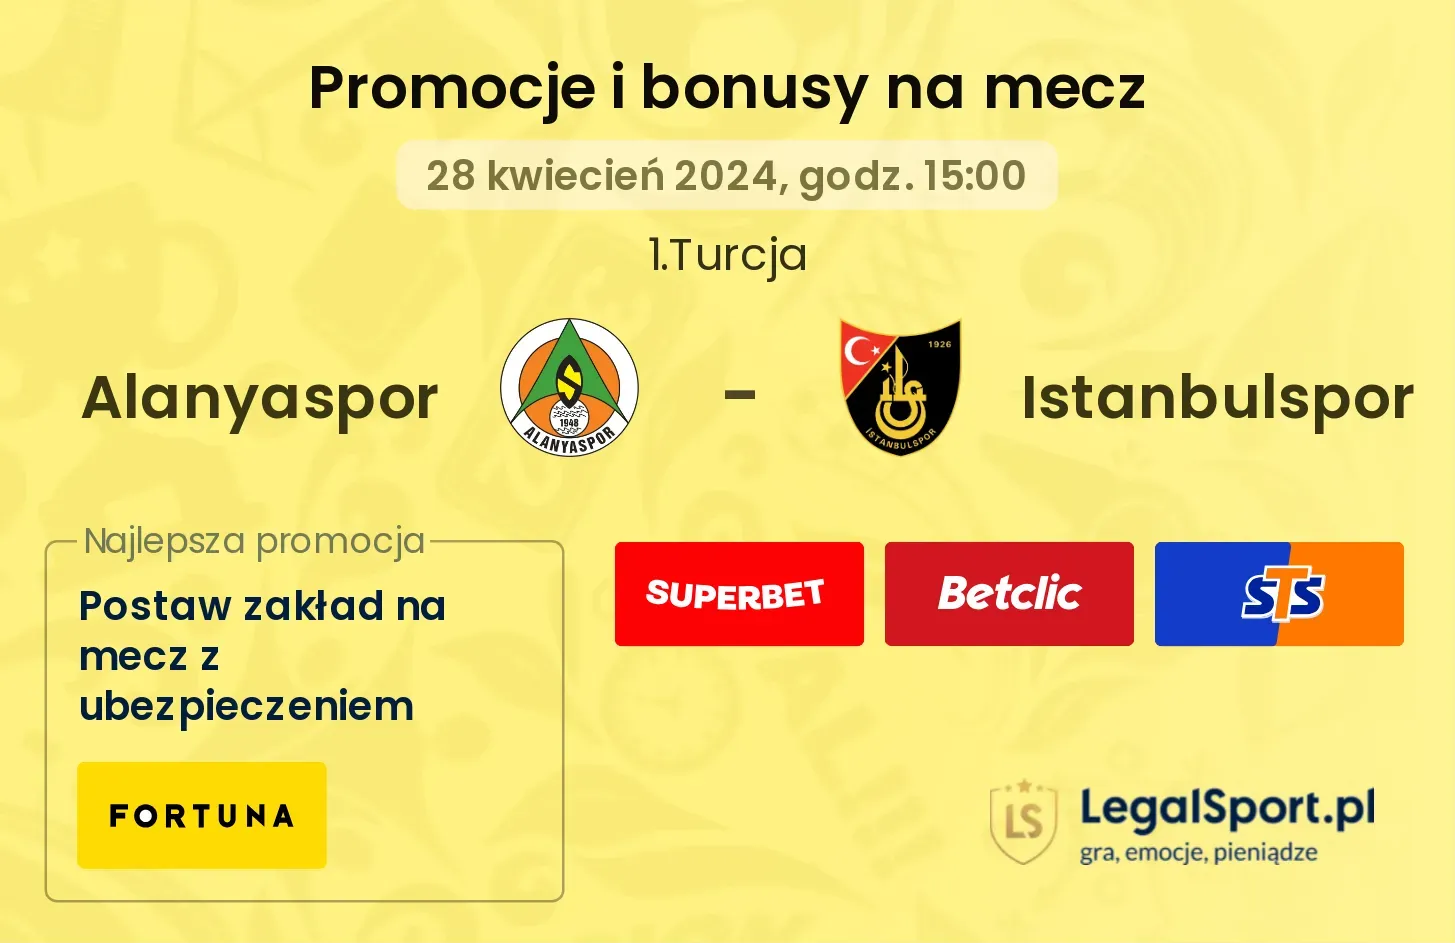 Alanyaspor - Istanbulspor promocje bonusy na mecz